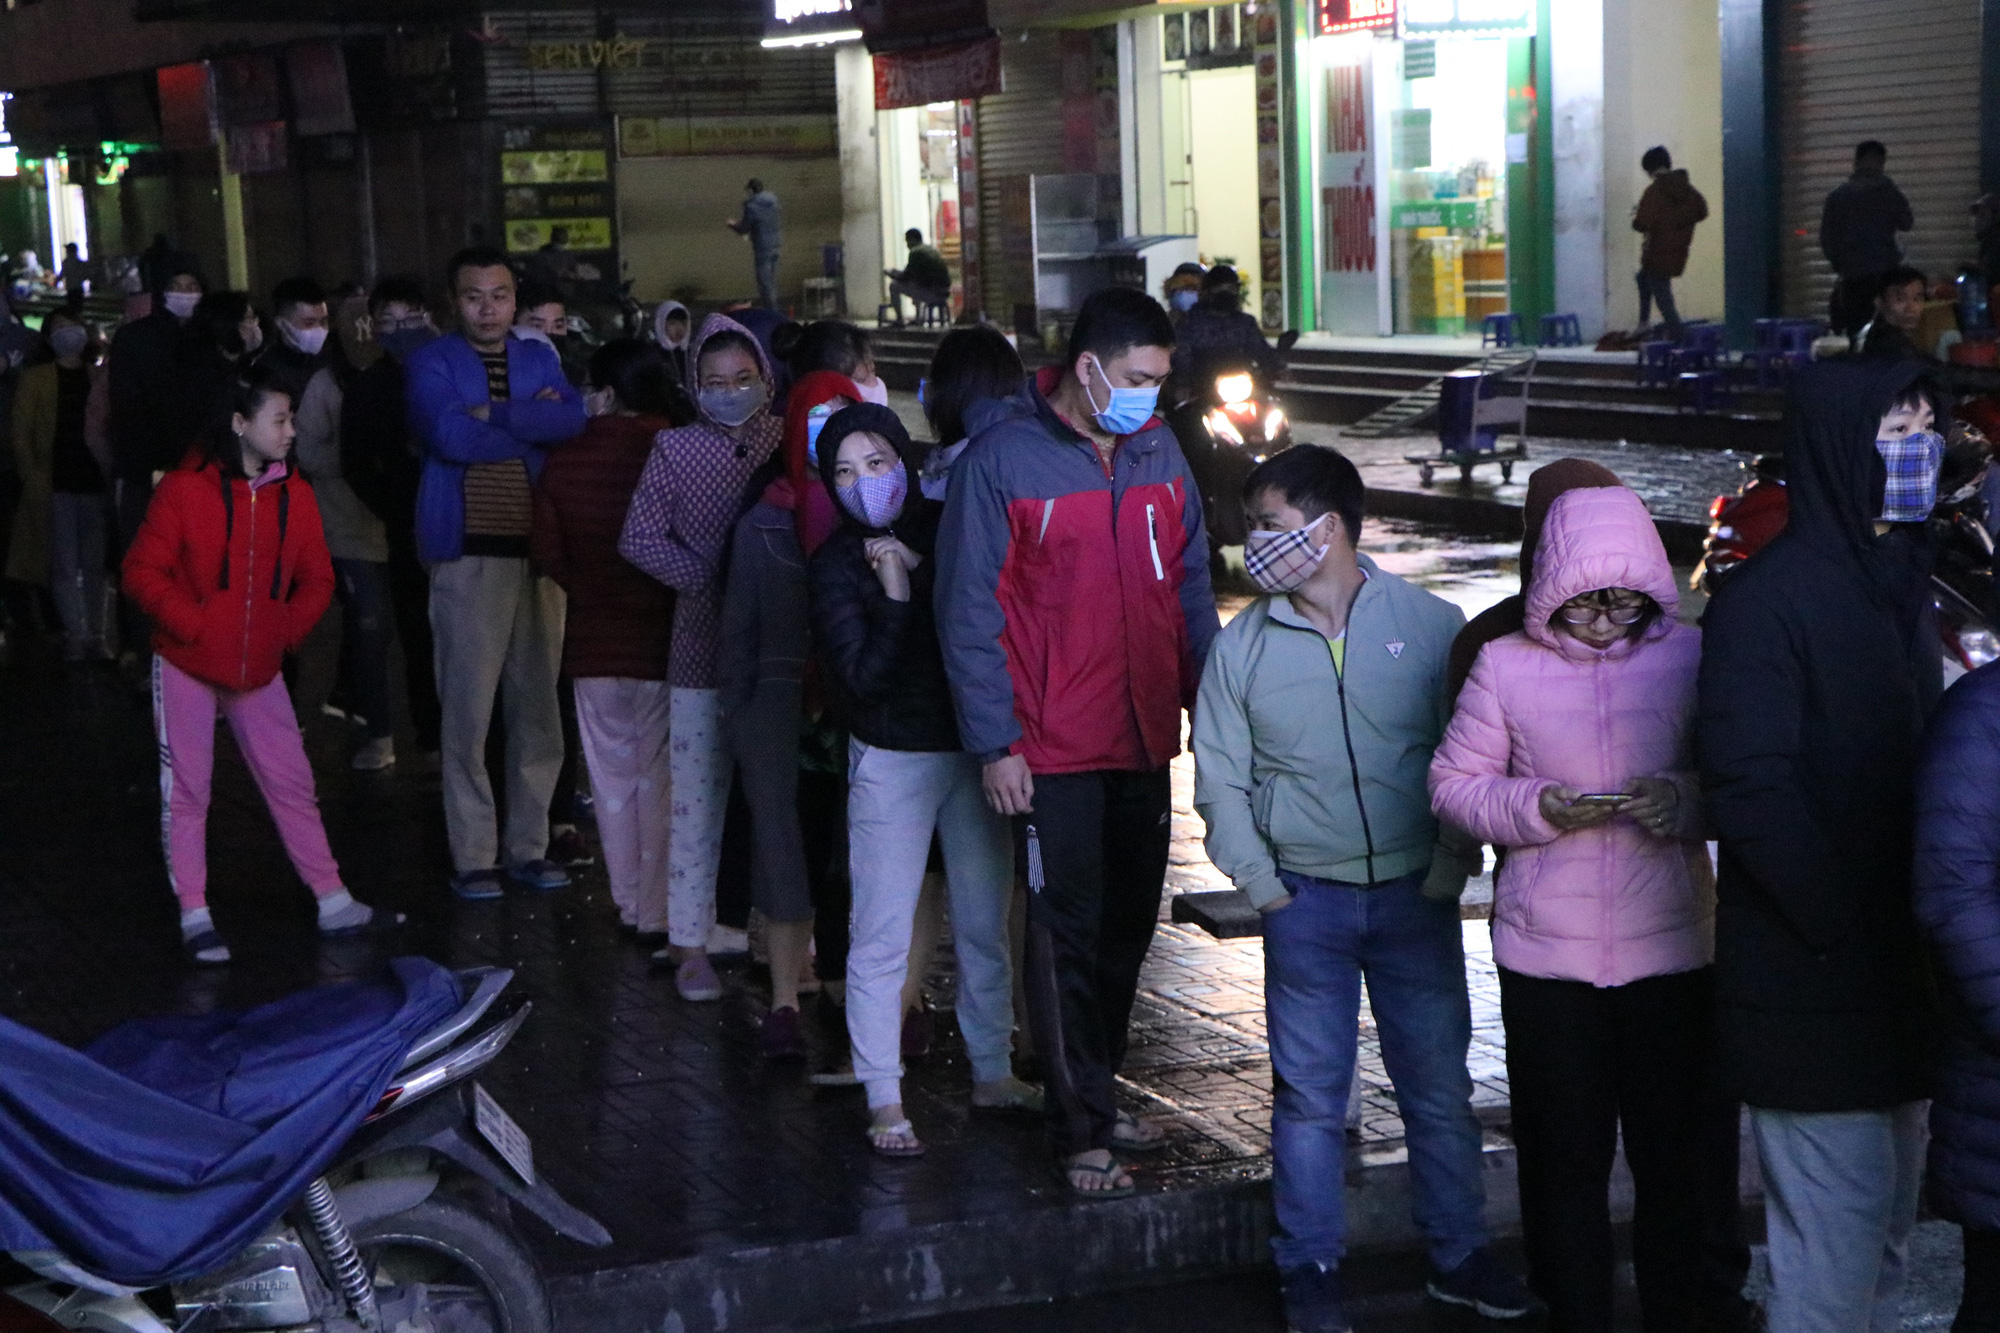 Hà Nội: Nghe tin một cửa hiệu thuốc bán khẩu trang với giá gốc, người dân đội mưa ồ ạt xếp hàng chờ mua - Ảnh 3.